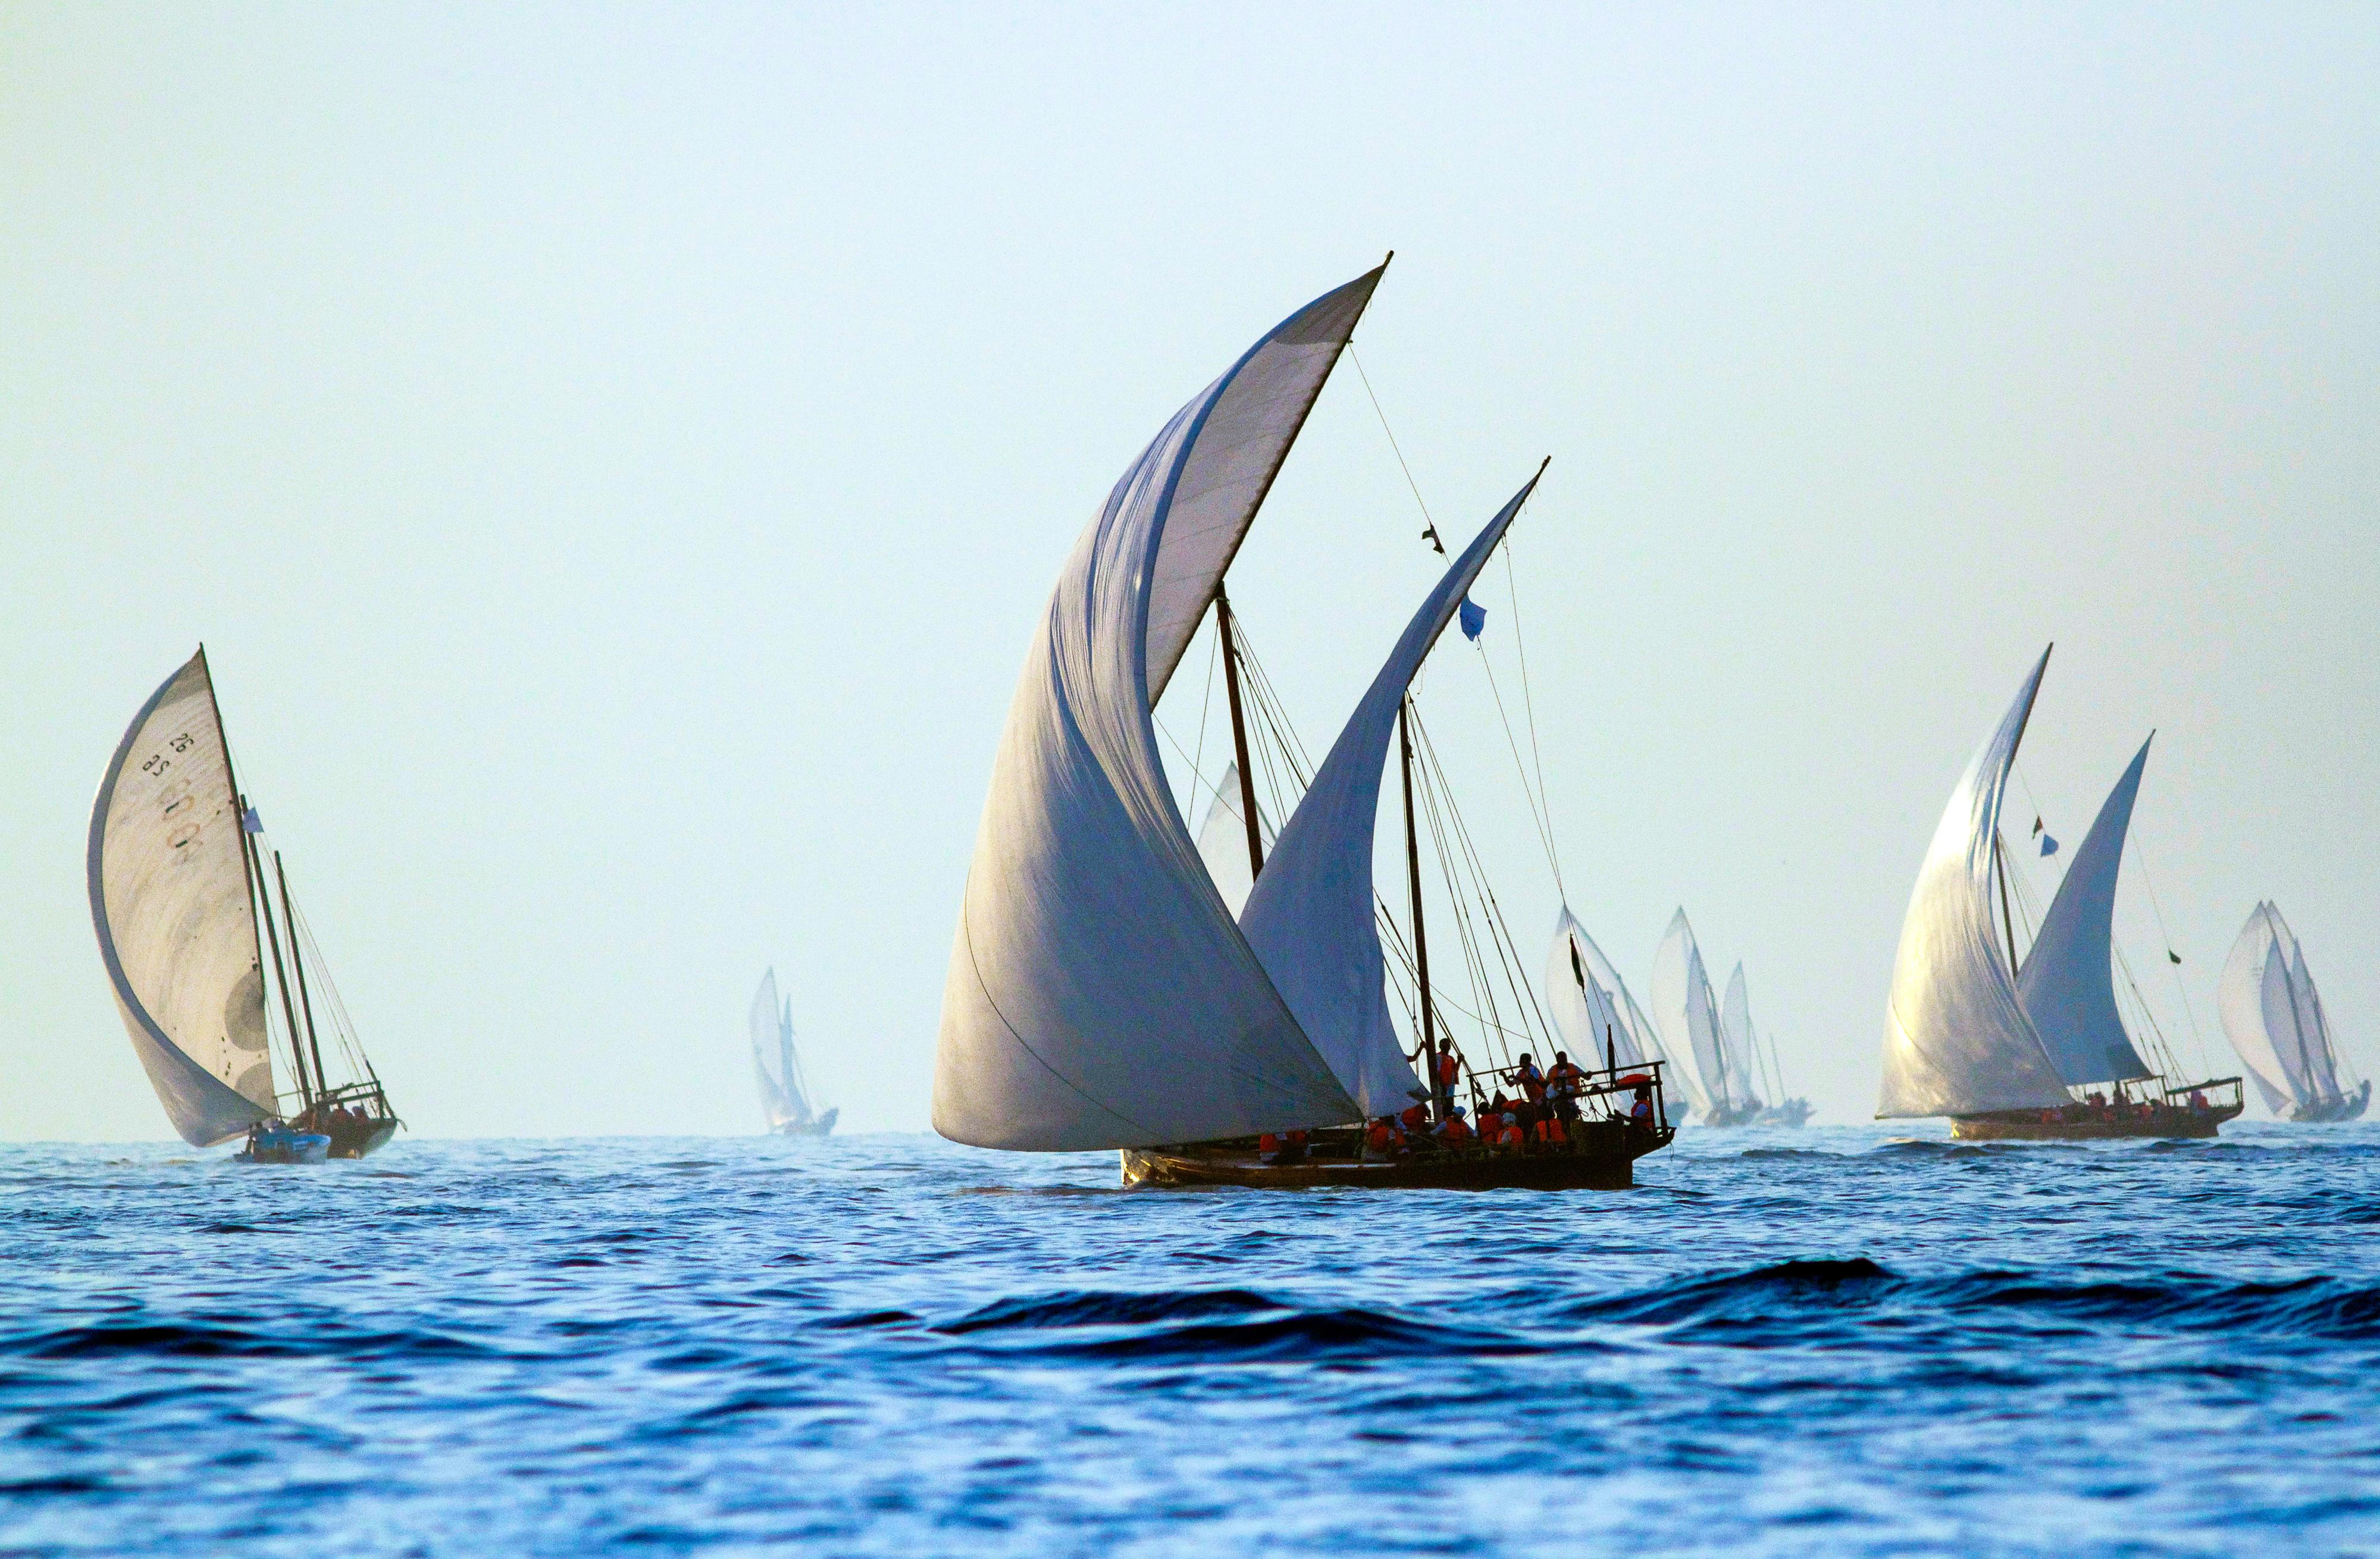 Inspiration
La famille de meubles Dhow fait référence aux voiles gonflées des bateaux traditionnels omanais, un élément important de l'histoire maritime de cette nation de marins.

Artisanat
Bethan a réimaginé le mouvement des voiles dans un motif